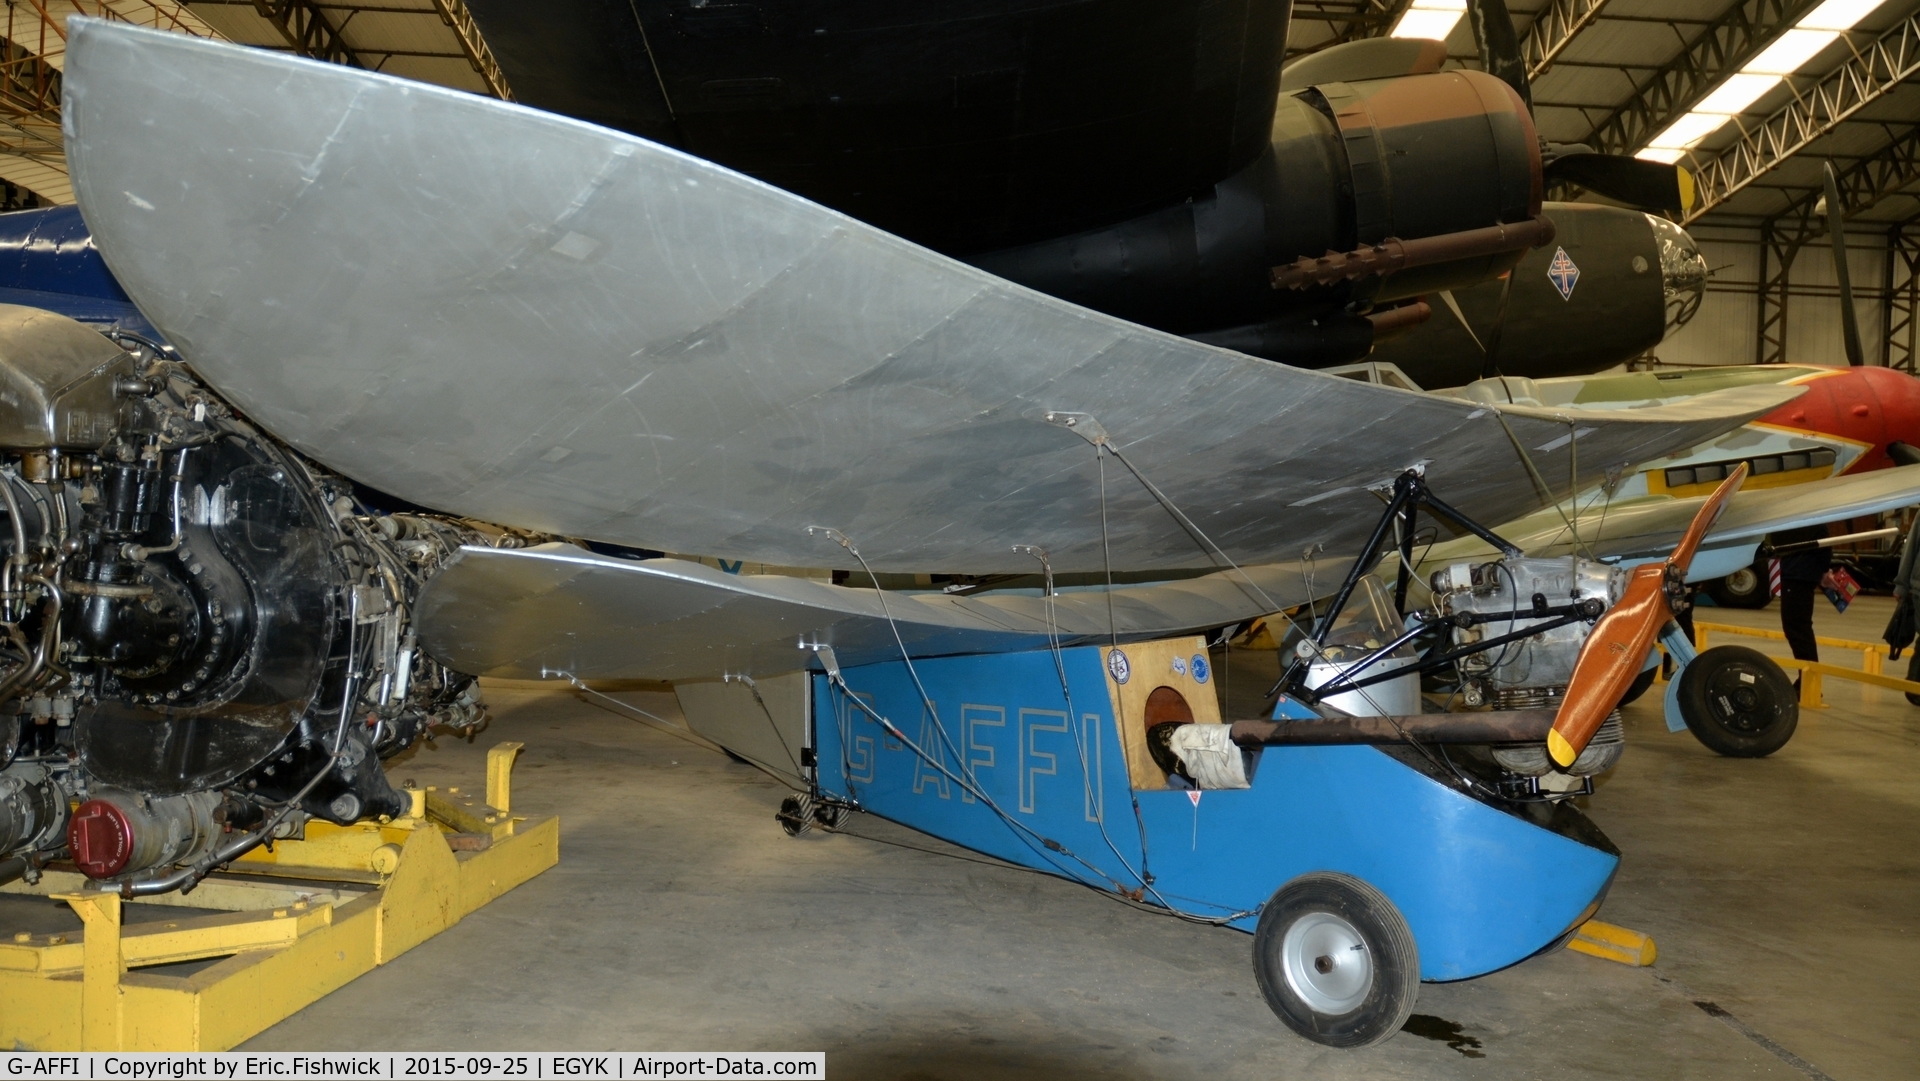 G-AFFI, Mignet HM.14 Pou-du-Ciel C/N BAPC74, BAPC.76 Mignet HM.14 Pou-du-ciel ('Flying Flea') at Yorkshire Air Museum, Sept. 2015. 